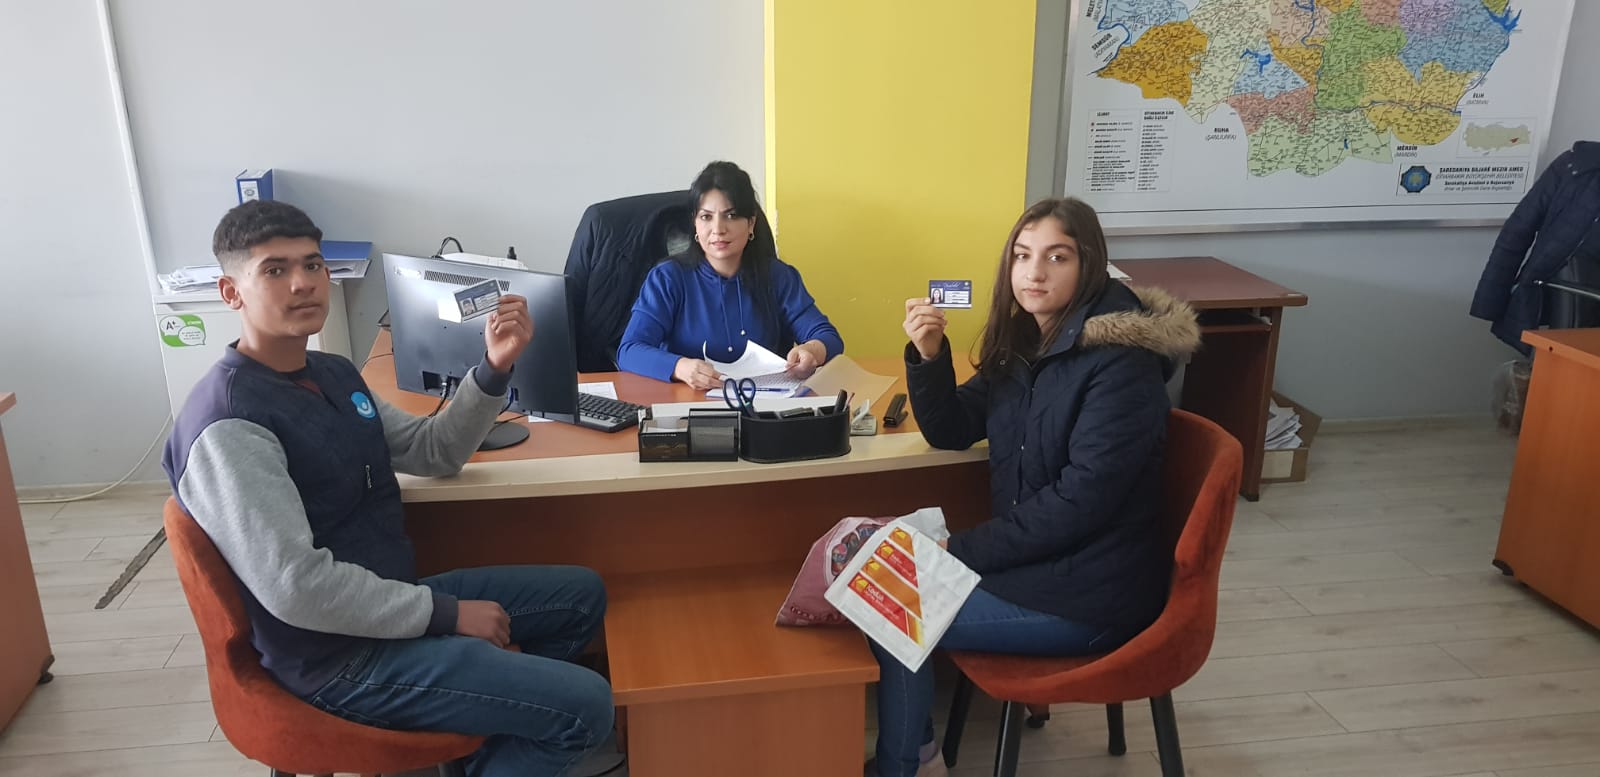 Diyarbakır’da 6 bin 500 lise öğrencisine diyar kart